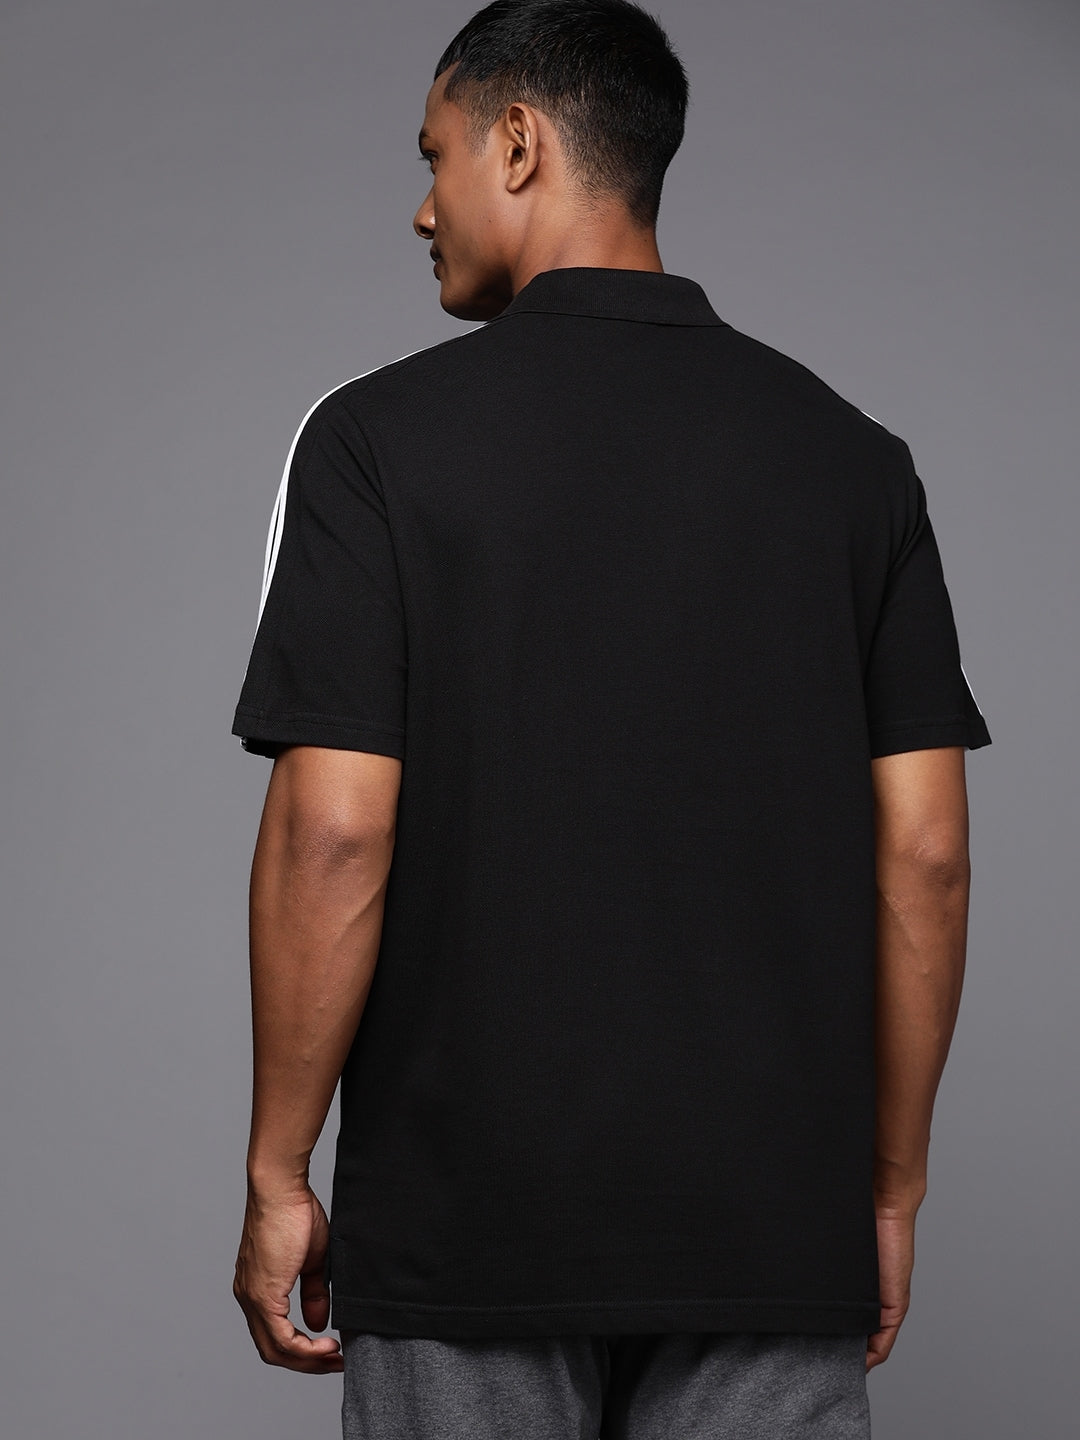 Adidas 3-Stripes Polo Collar Pure Cotton T-shirt - Distacart